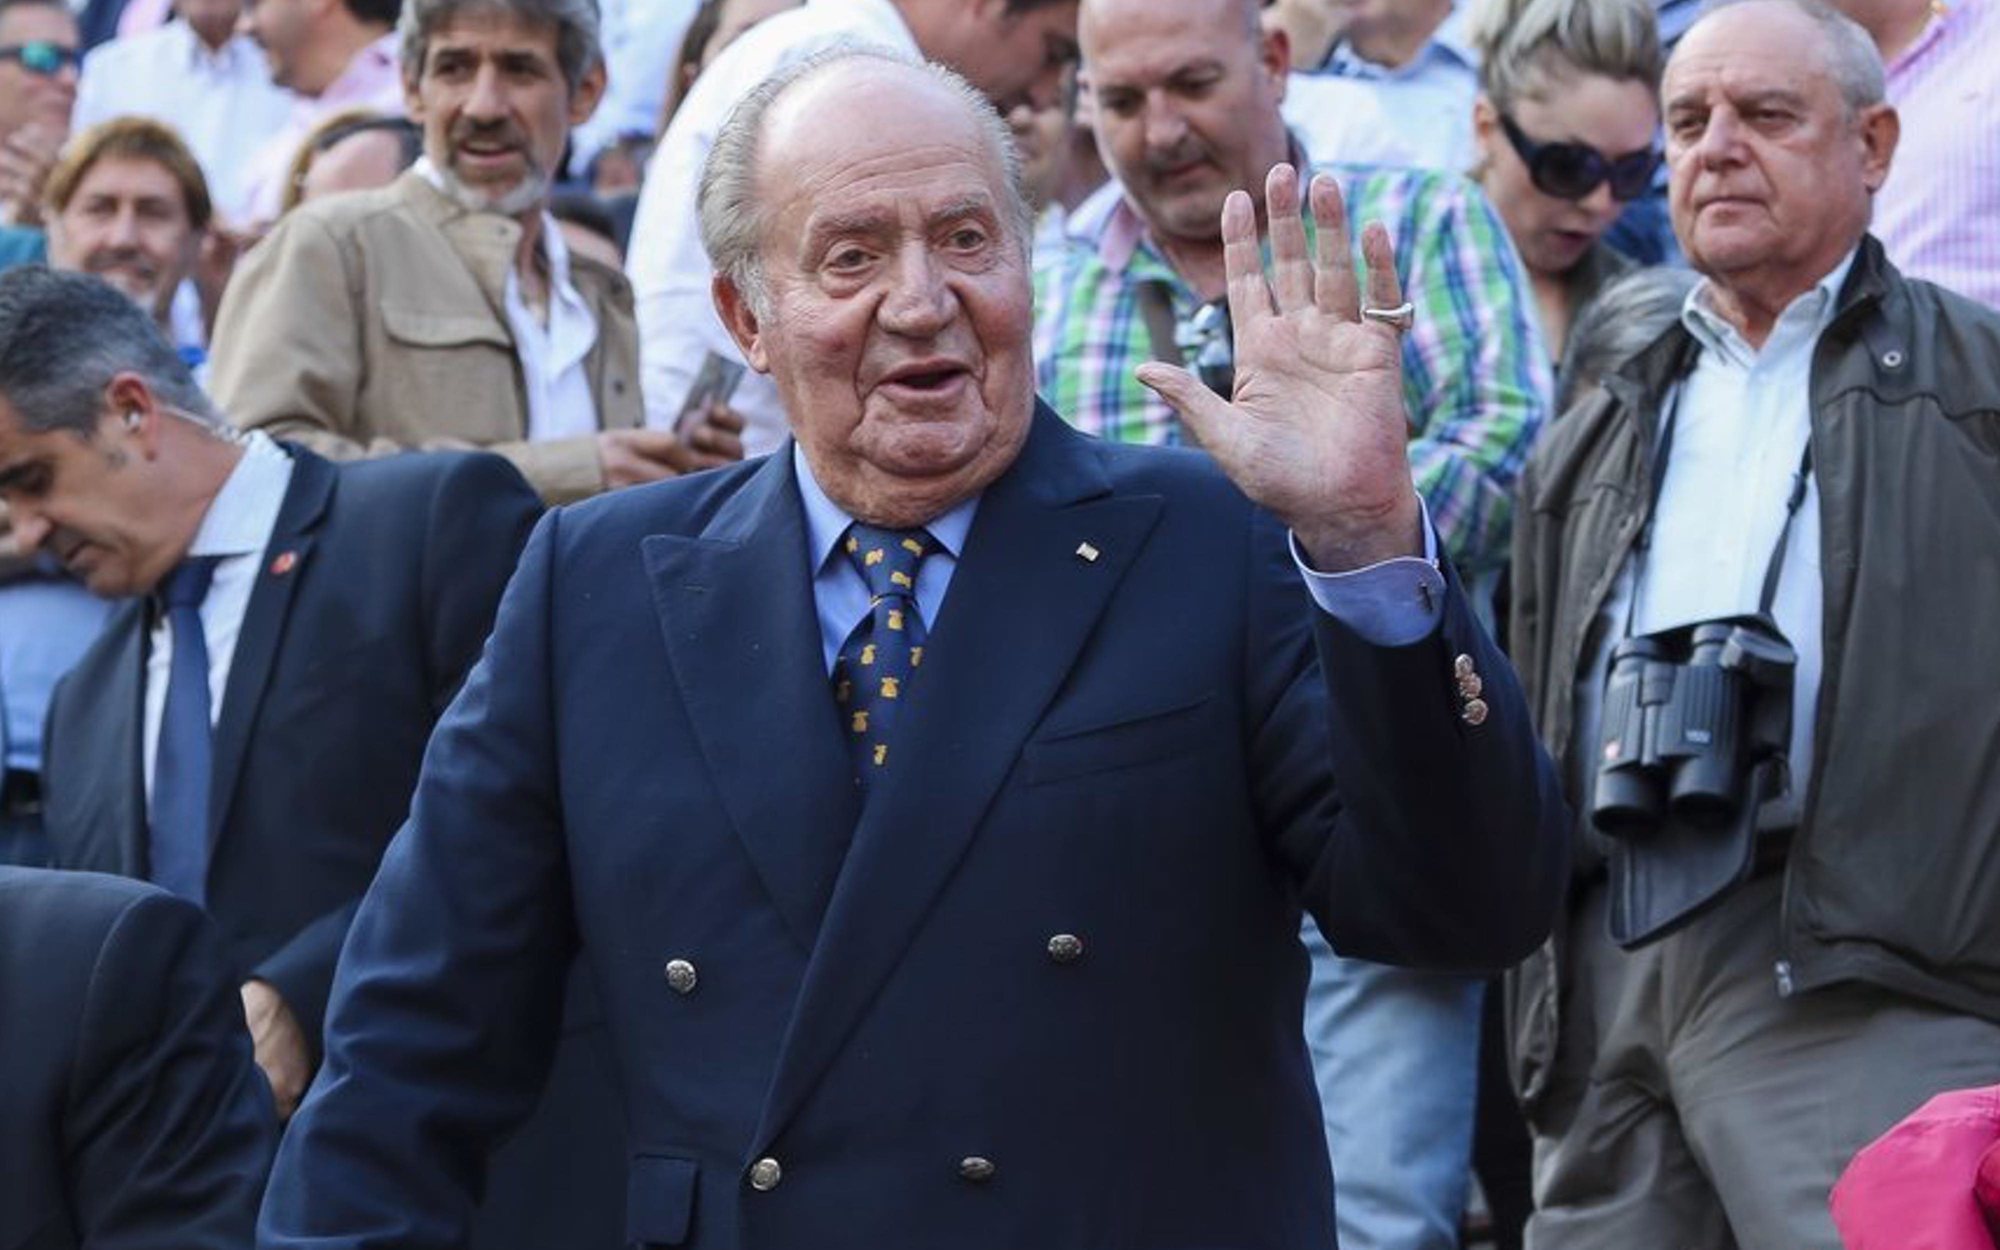 Mercedes Milá, sin piedad contra Juan Carlos I: "Se le tiene que caer la cara de vergüenza"